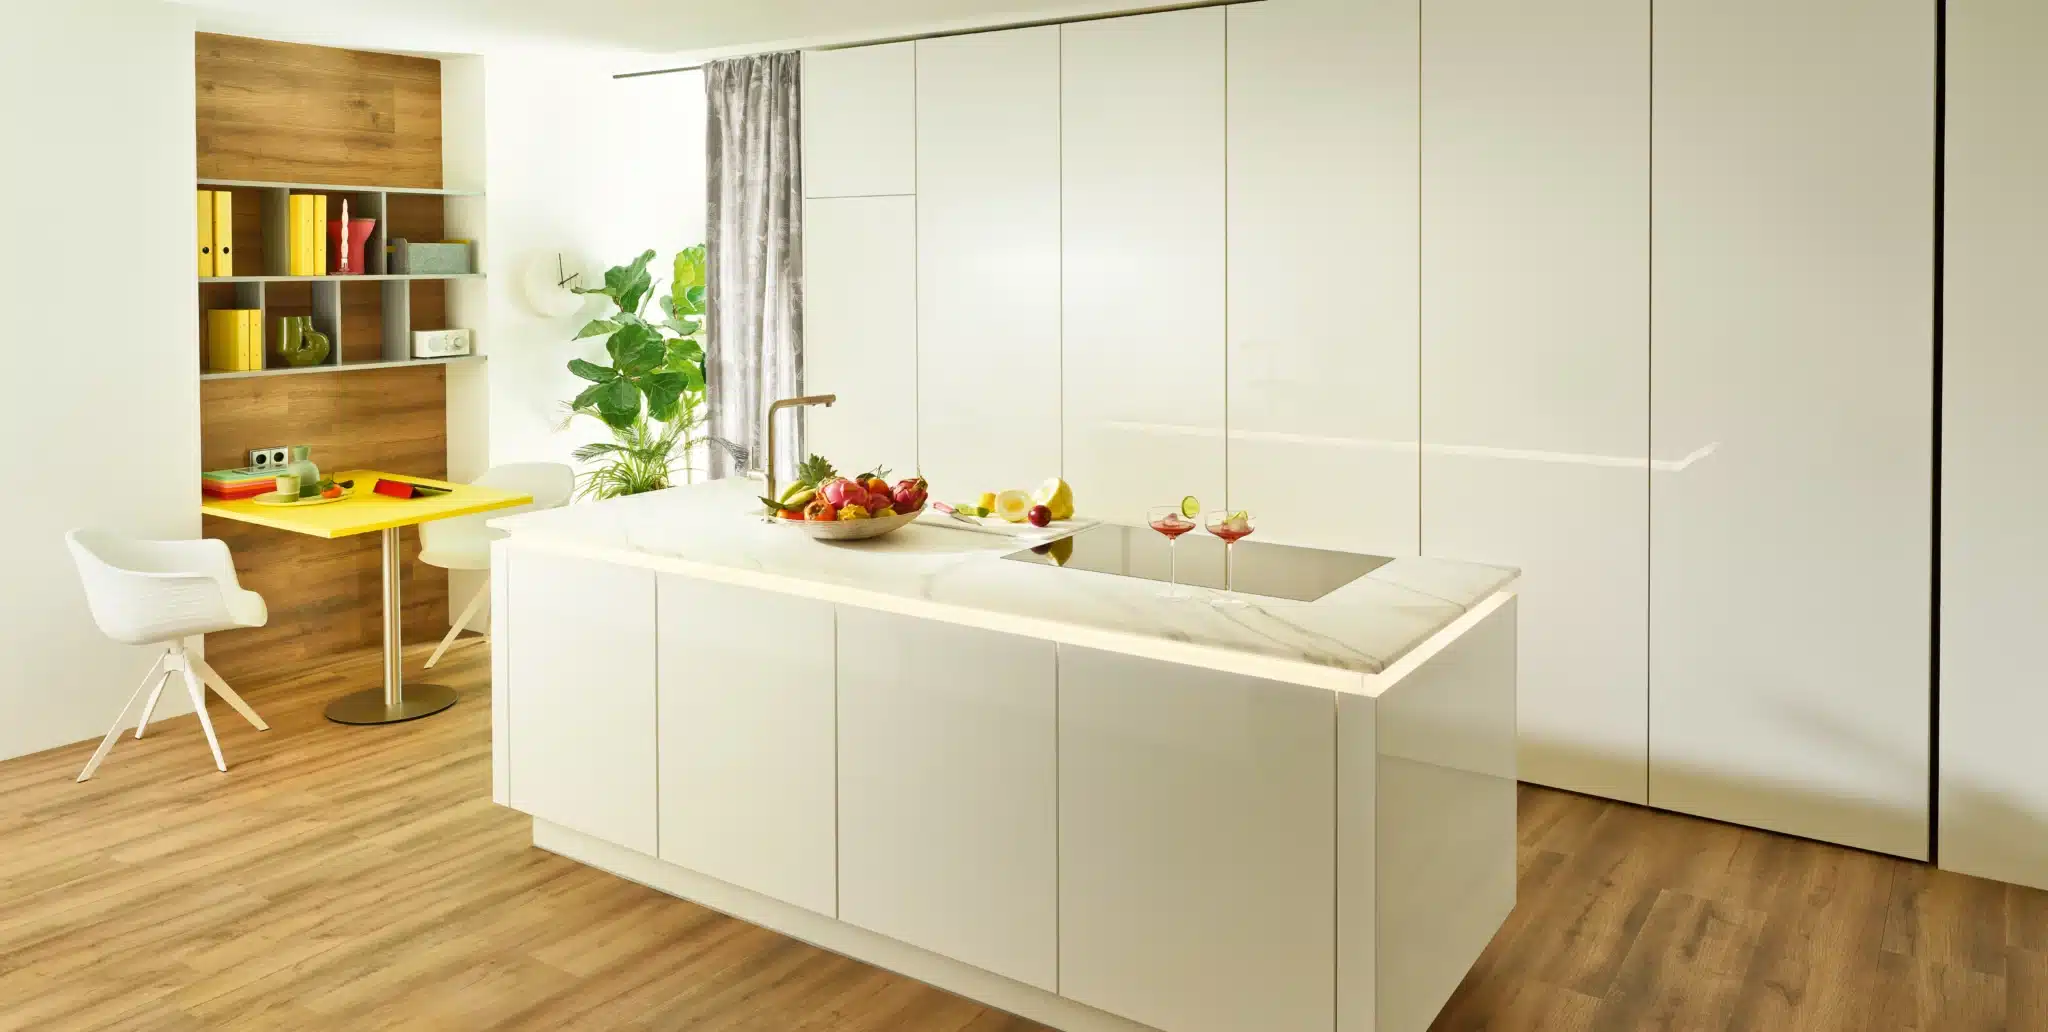 Das innovative Easy Slide System schafft mithilfe von EInschubtüren Ordnung in der weißen Küche